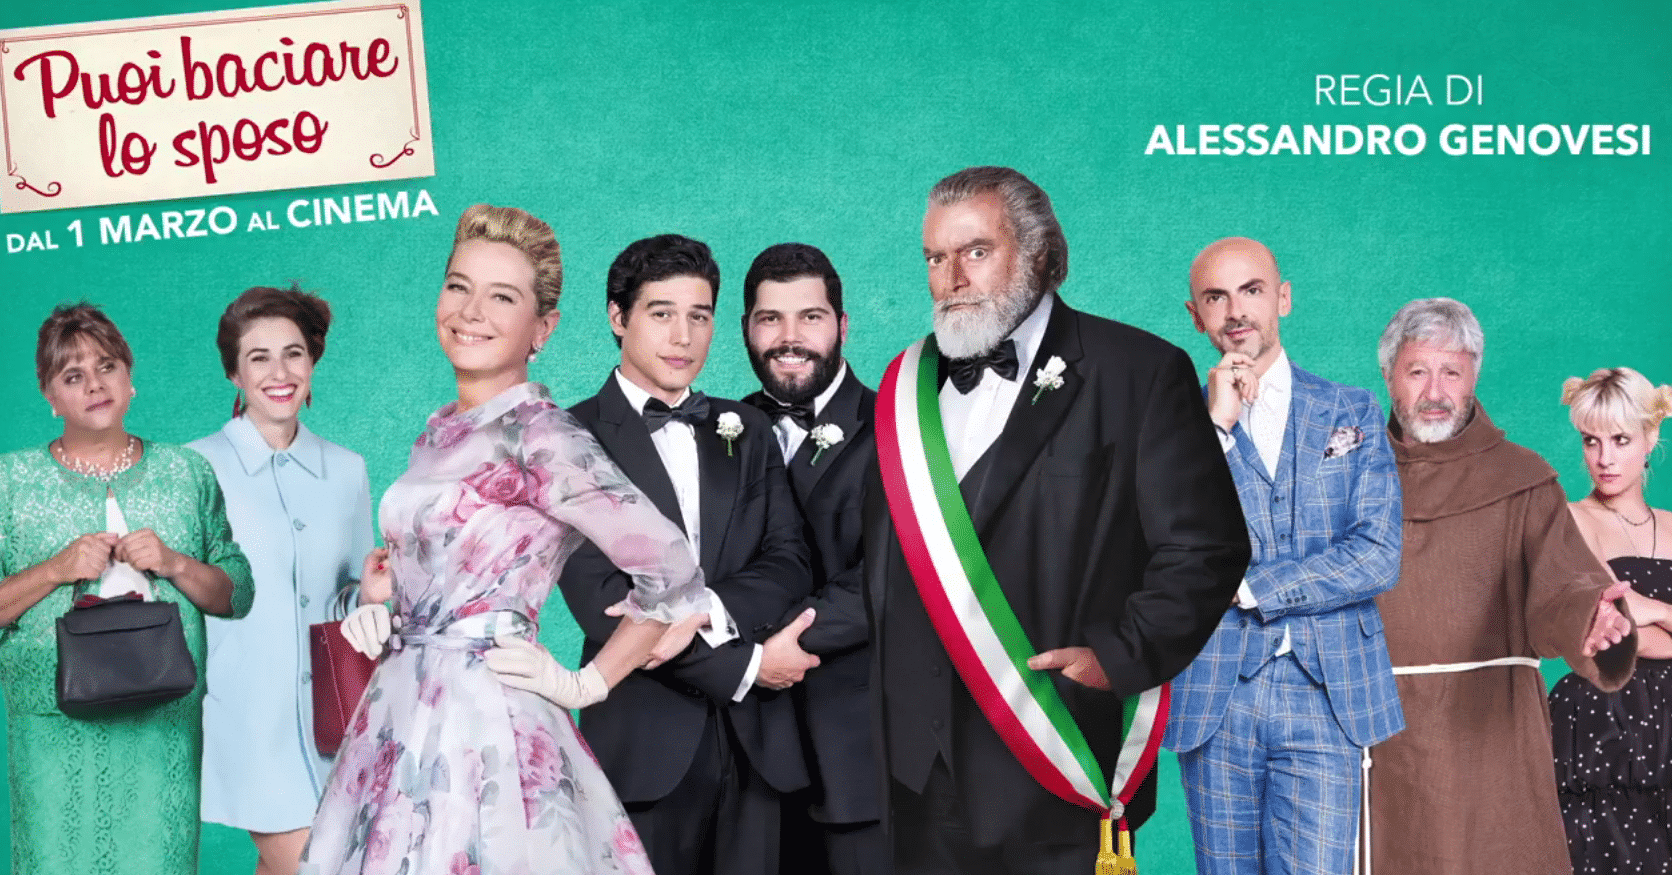 Puoi baciare lo sposo: la commedia con Salvatore Esposito in anteprima a Torino